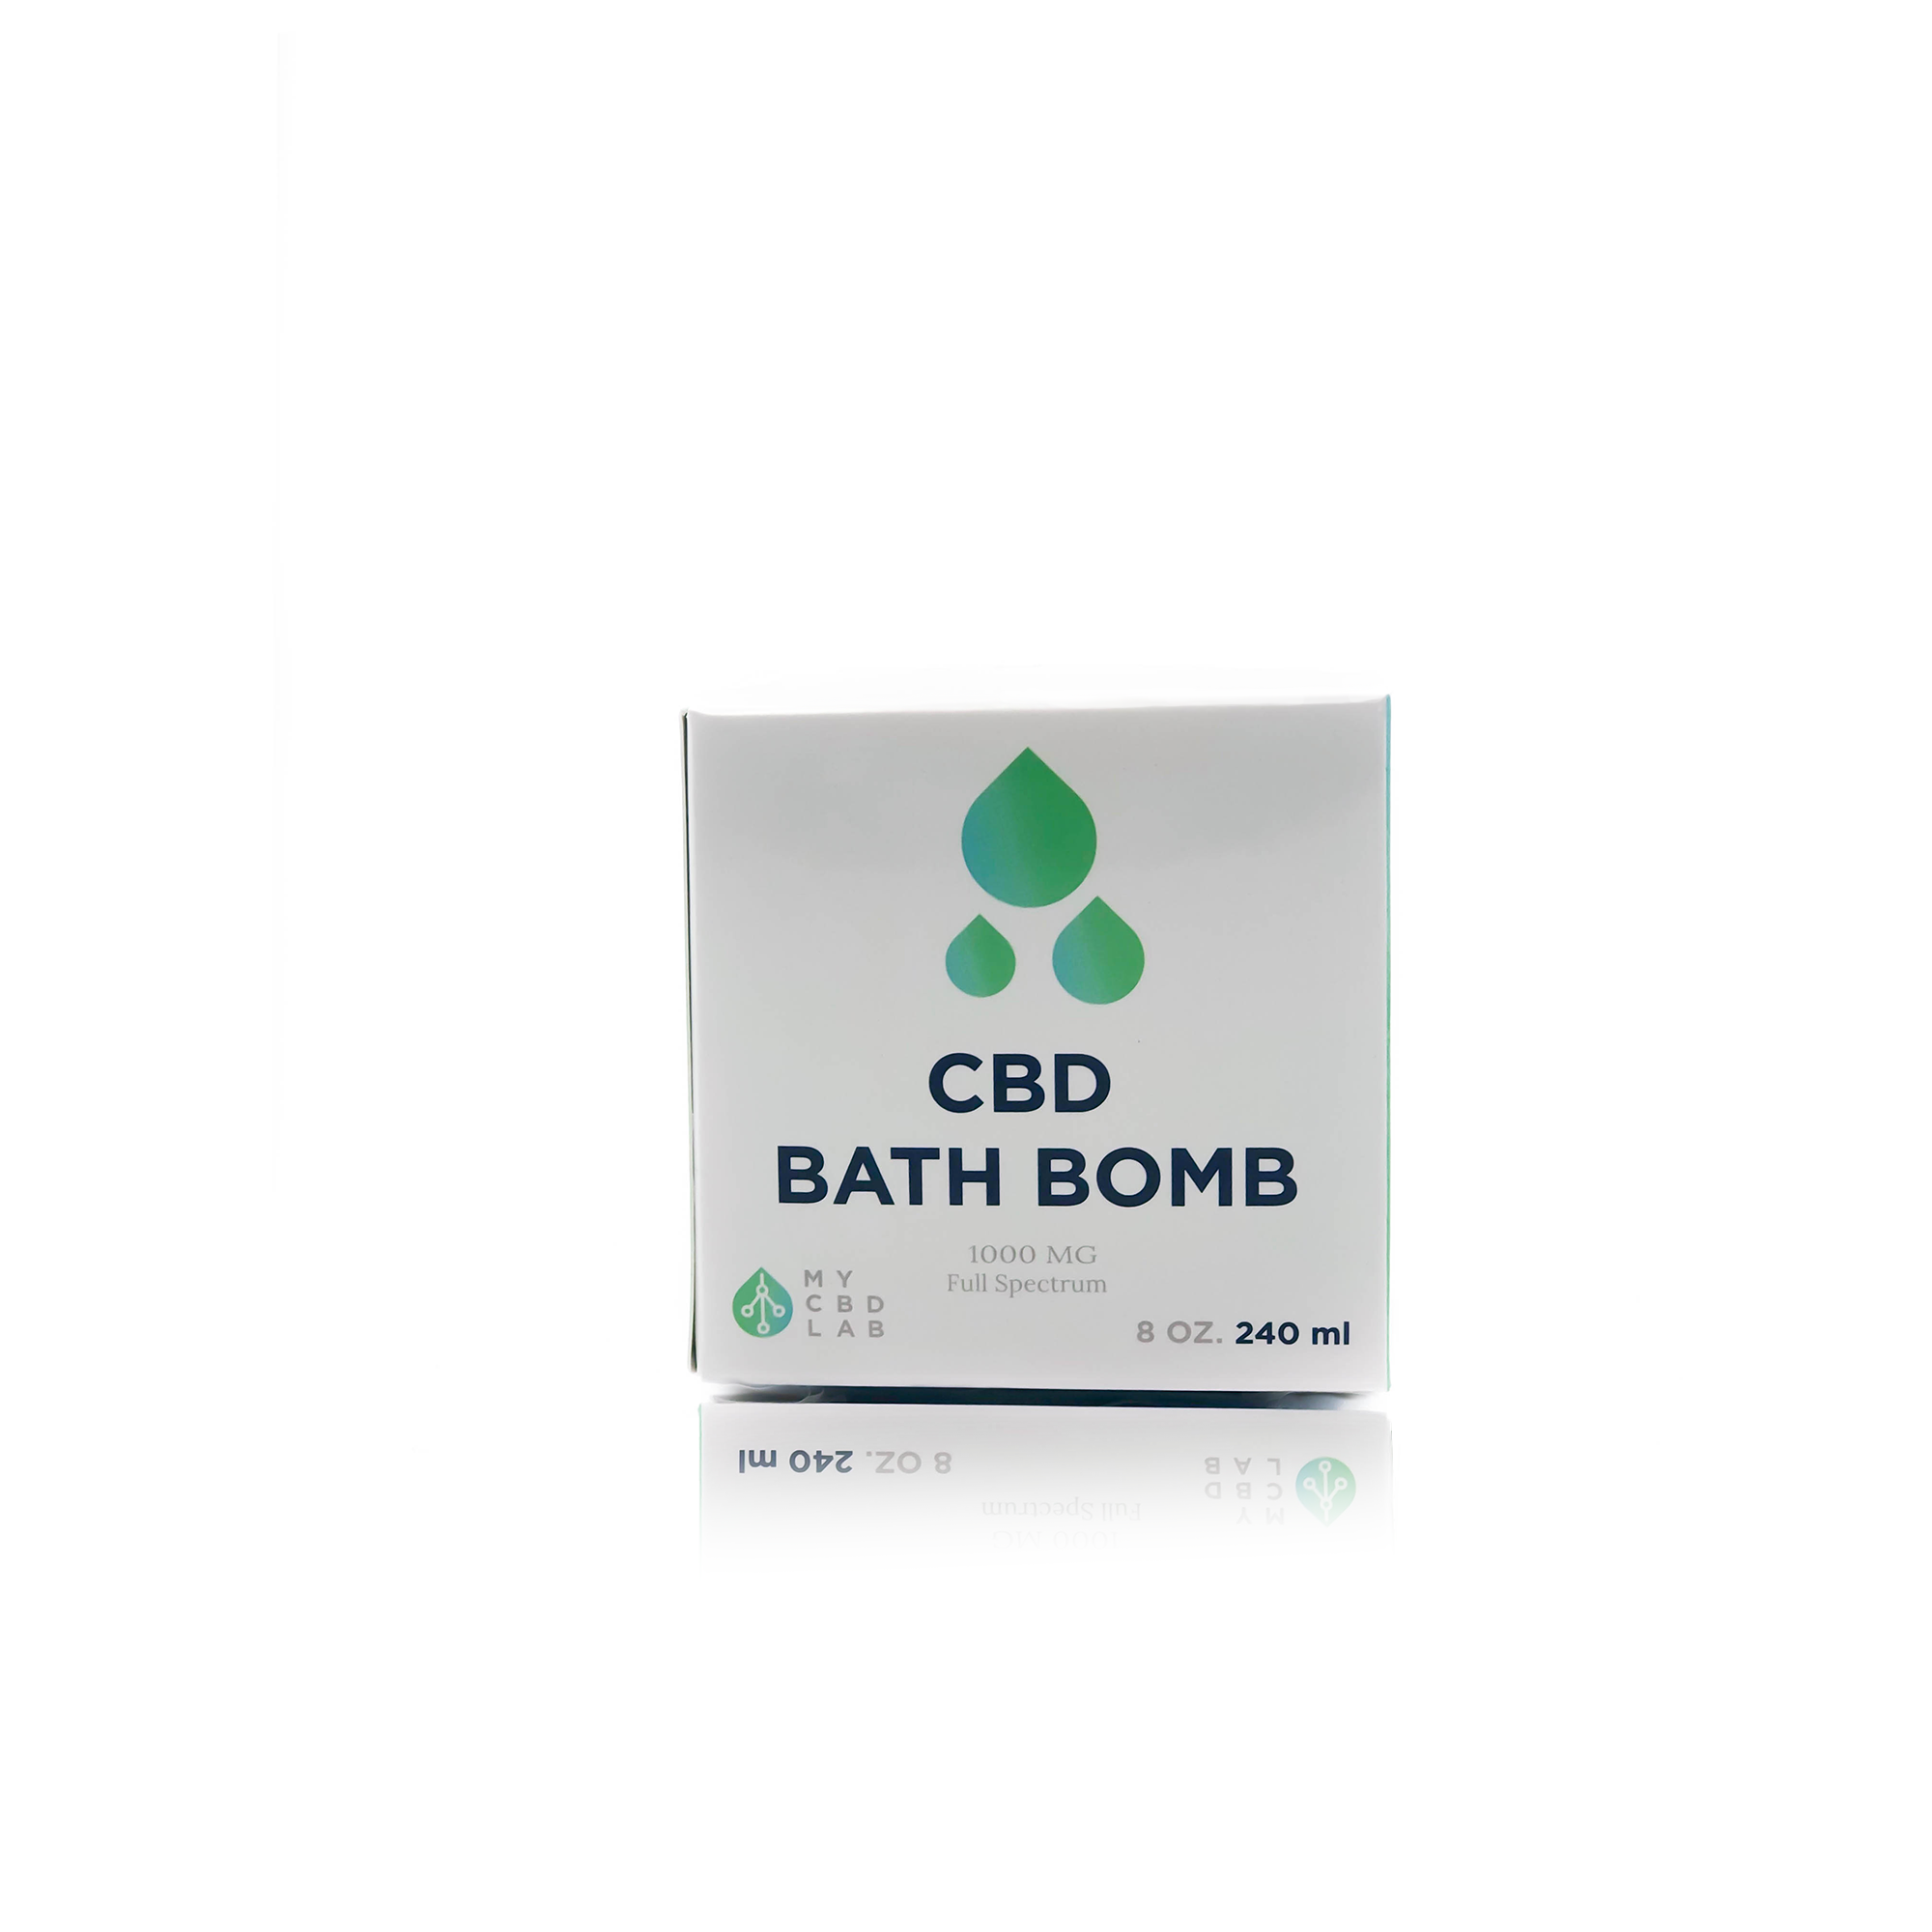 1000mg cbd bath bomb